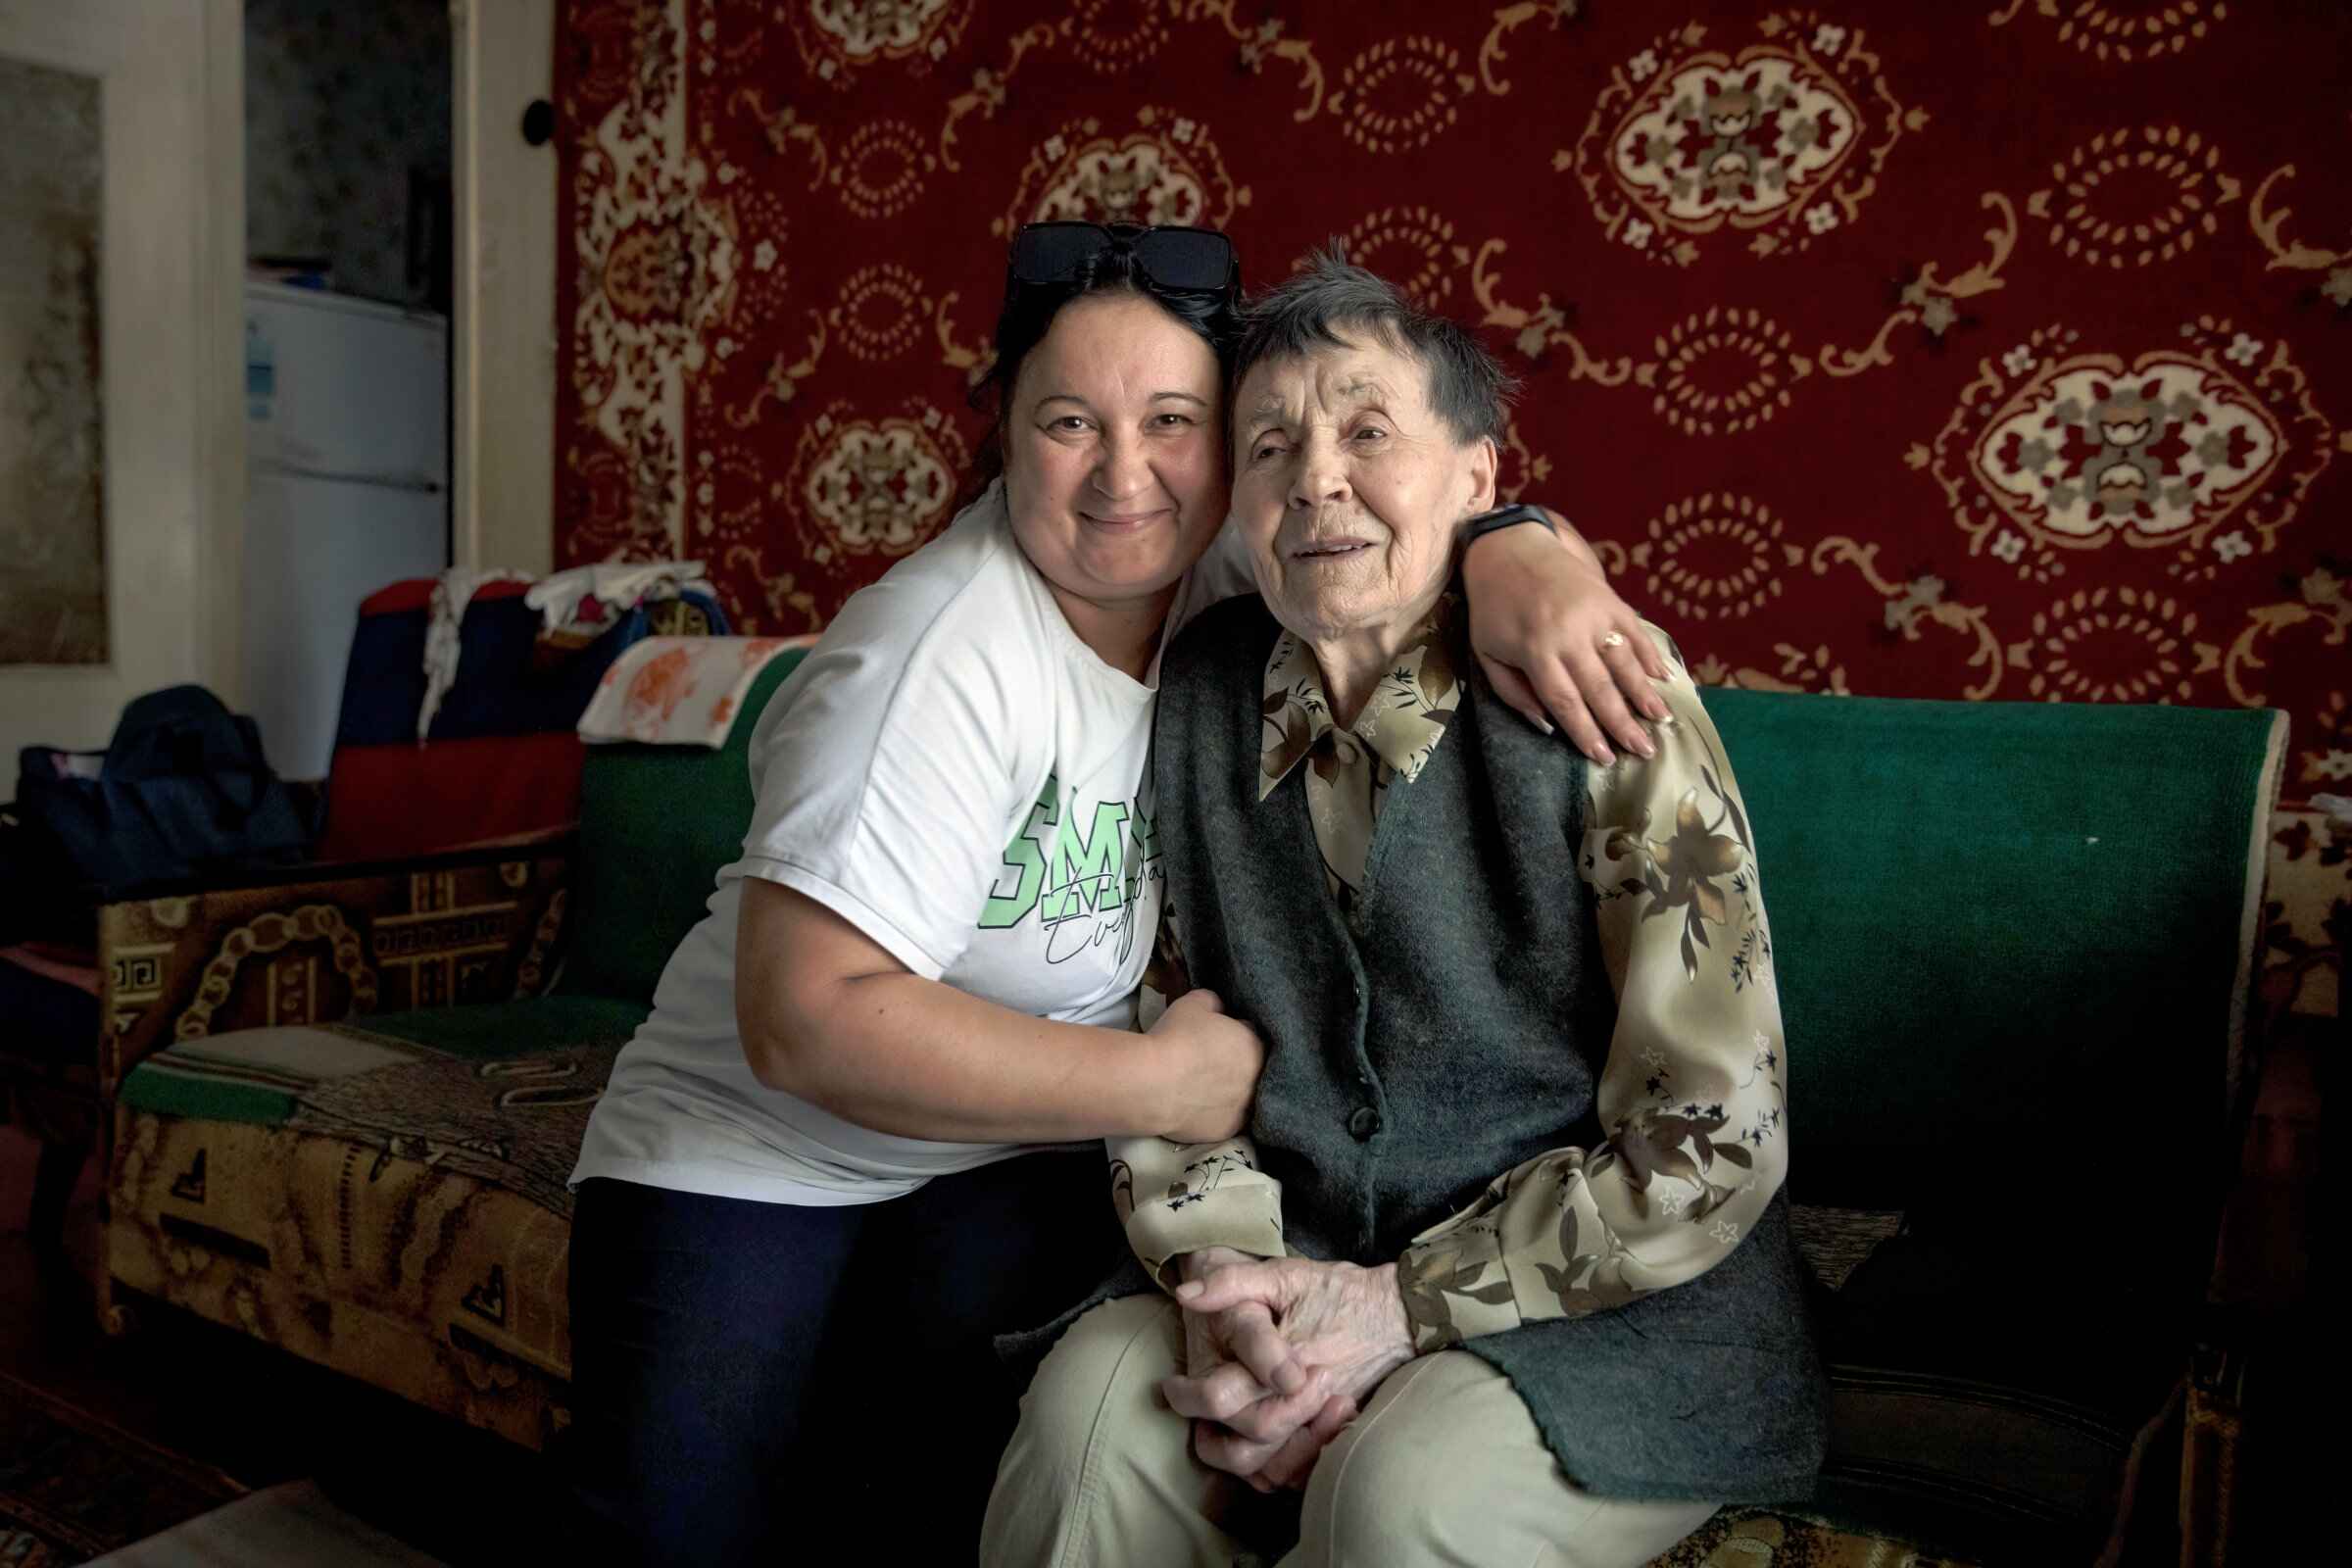 Eine jüngere und eine ältere Frau auf einem grünen Sofa vor roter Ornamenttapete